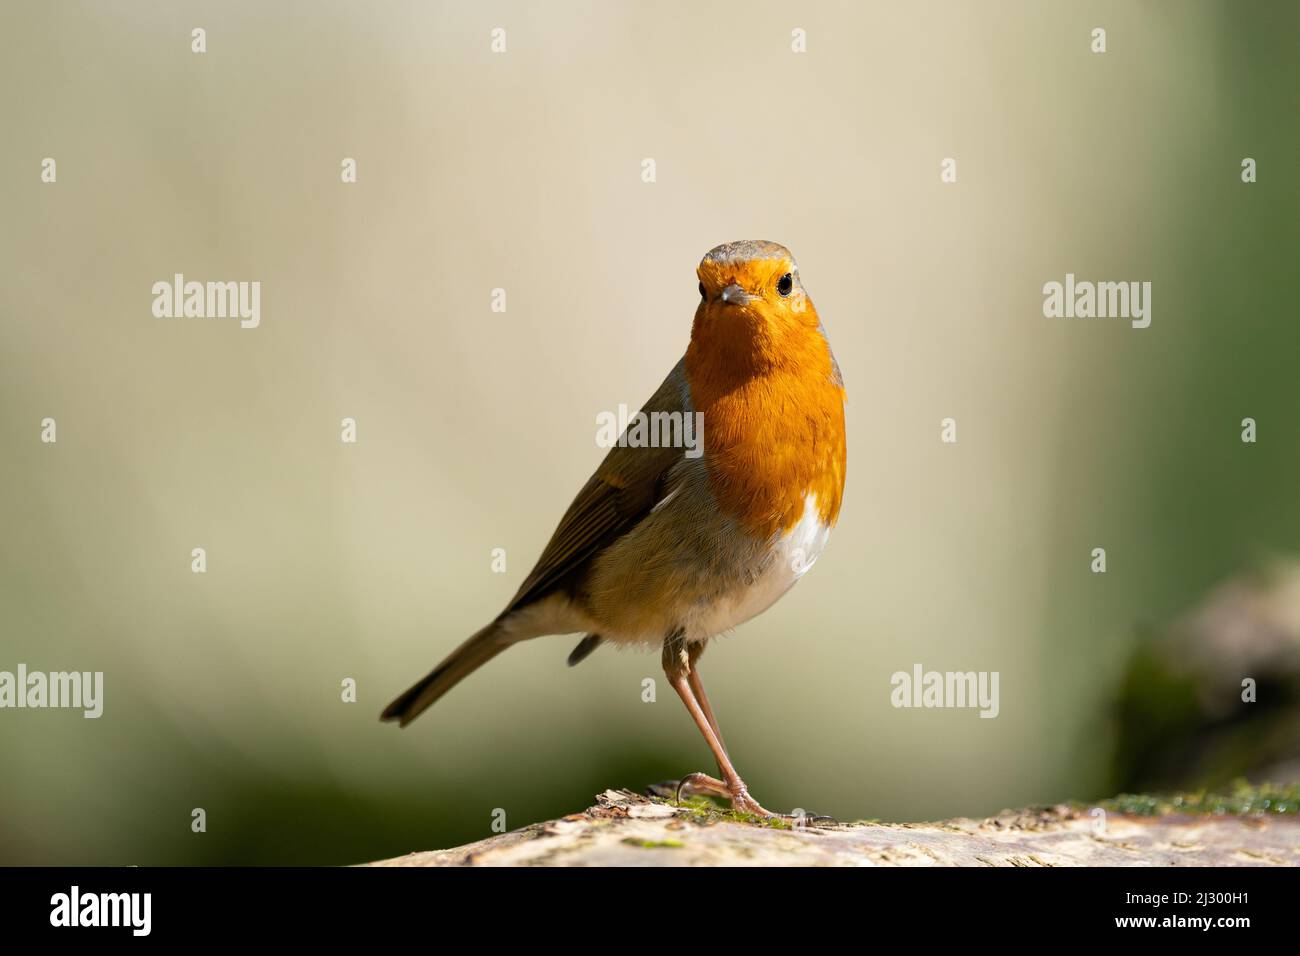 Most common garden bird Robin Stock Photo